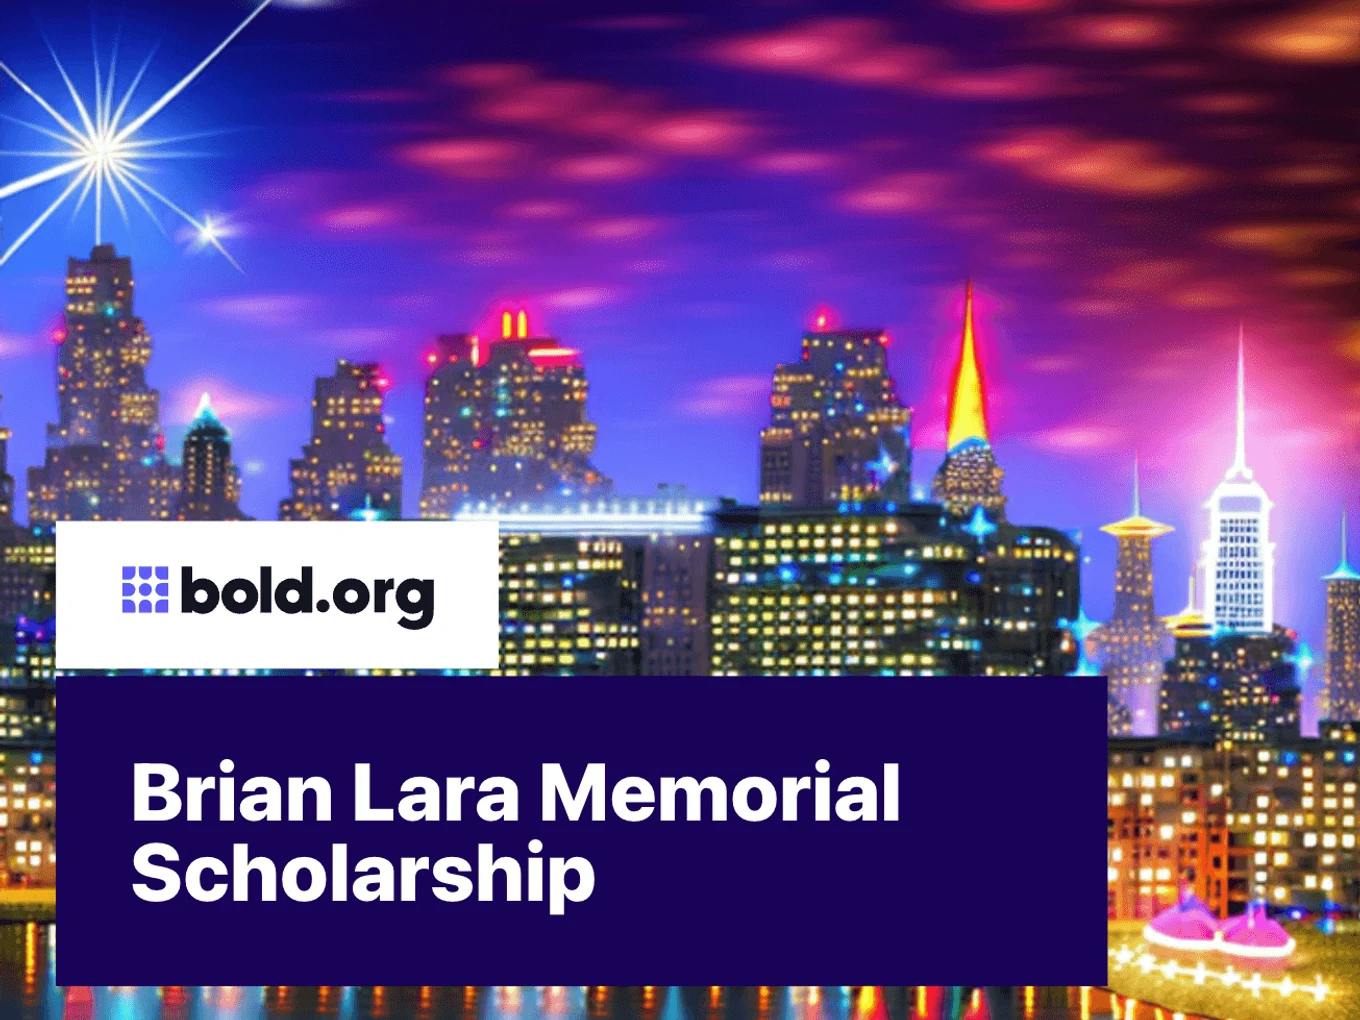 Brian Lara Memorial Scholarship